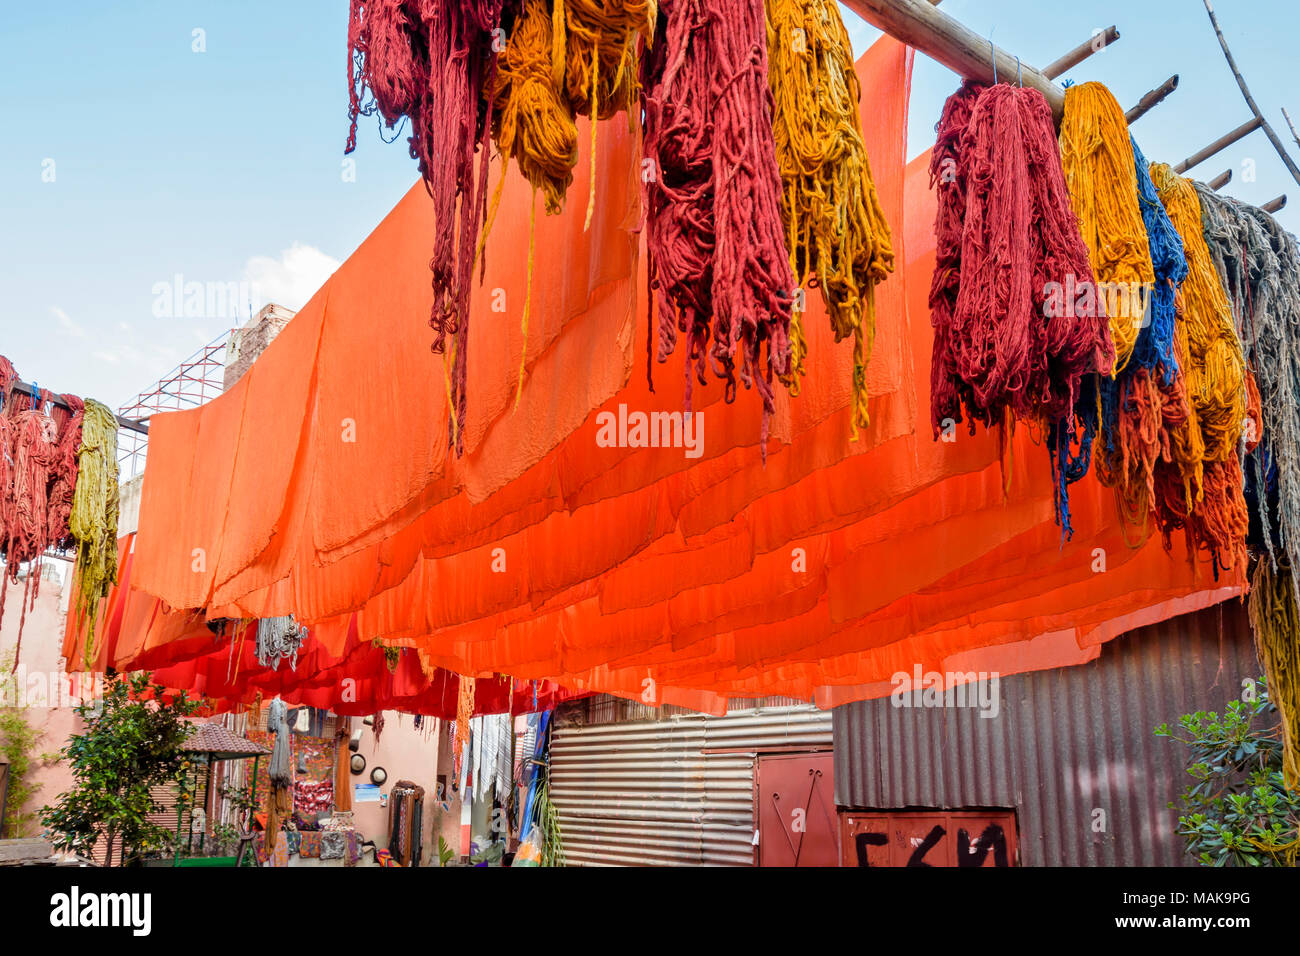 Il Marocco Marrakech Jemaa el Fna SOUK MEDINA un cantiere con multicolore lana tinta arancione e fogli appesi da pali ad asciugare al sole Foto Stock